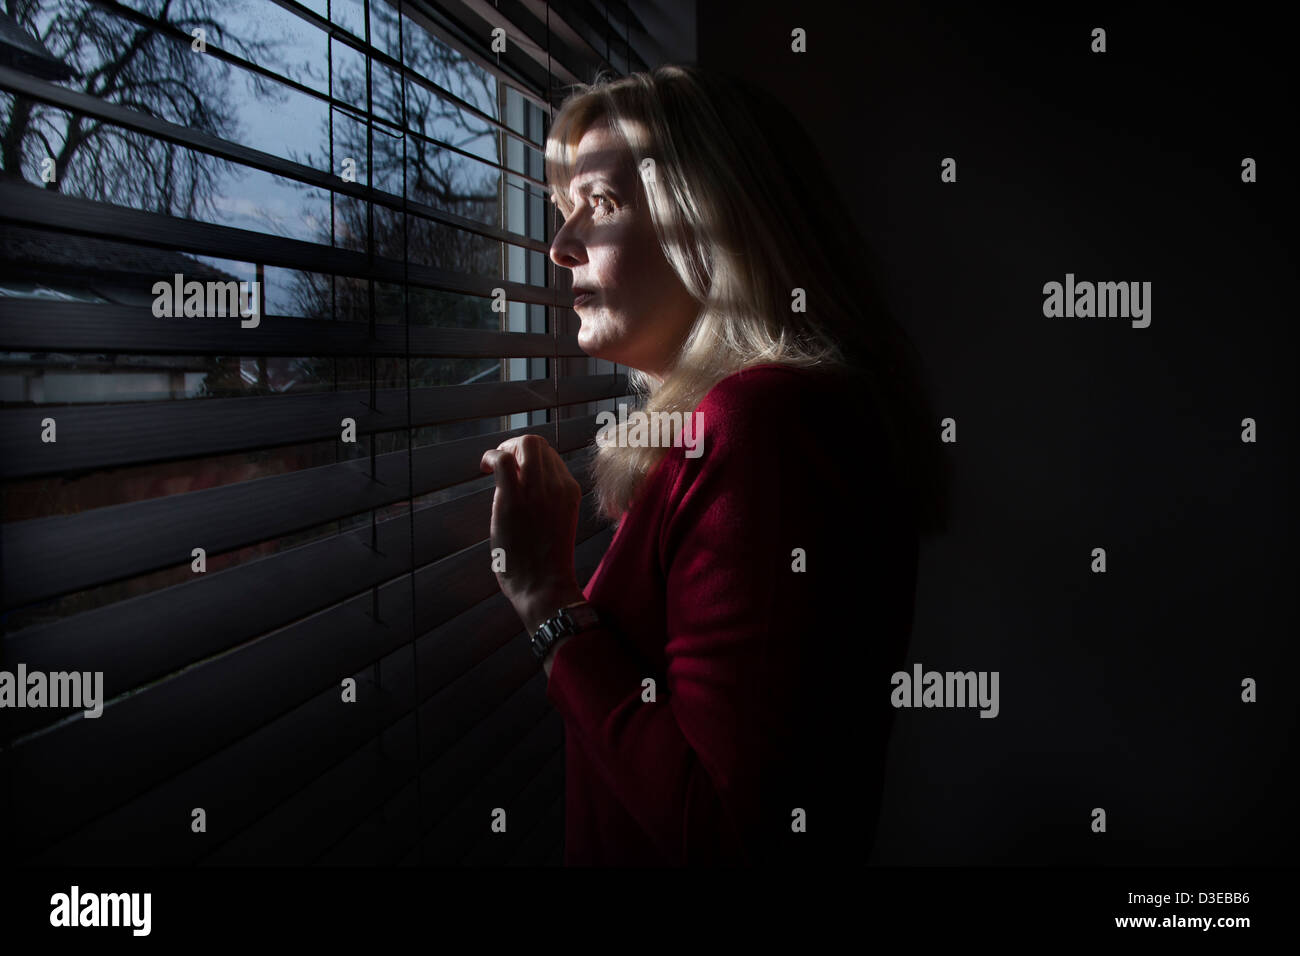 Profil einer Frau im Schatten Blick durch ein Fenster Licht strömt durch die Blinds auf ihr Gesicht. Modelleigenschaft veröffentlicht. Stockfoto